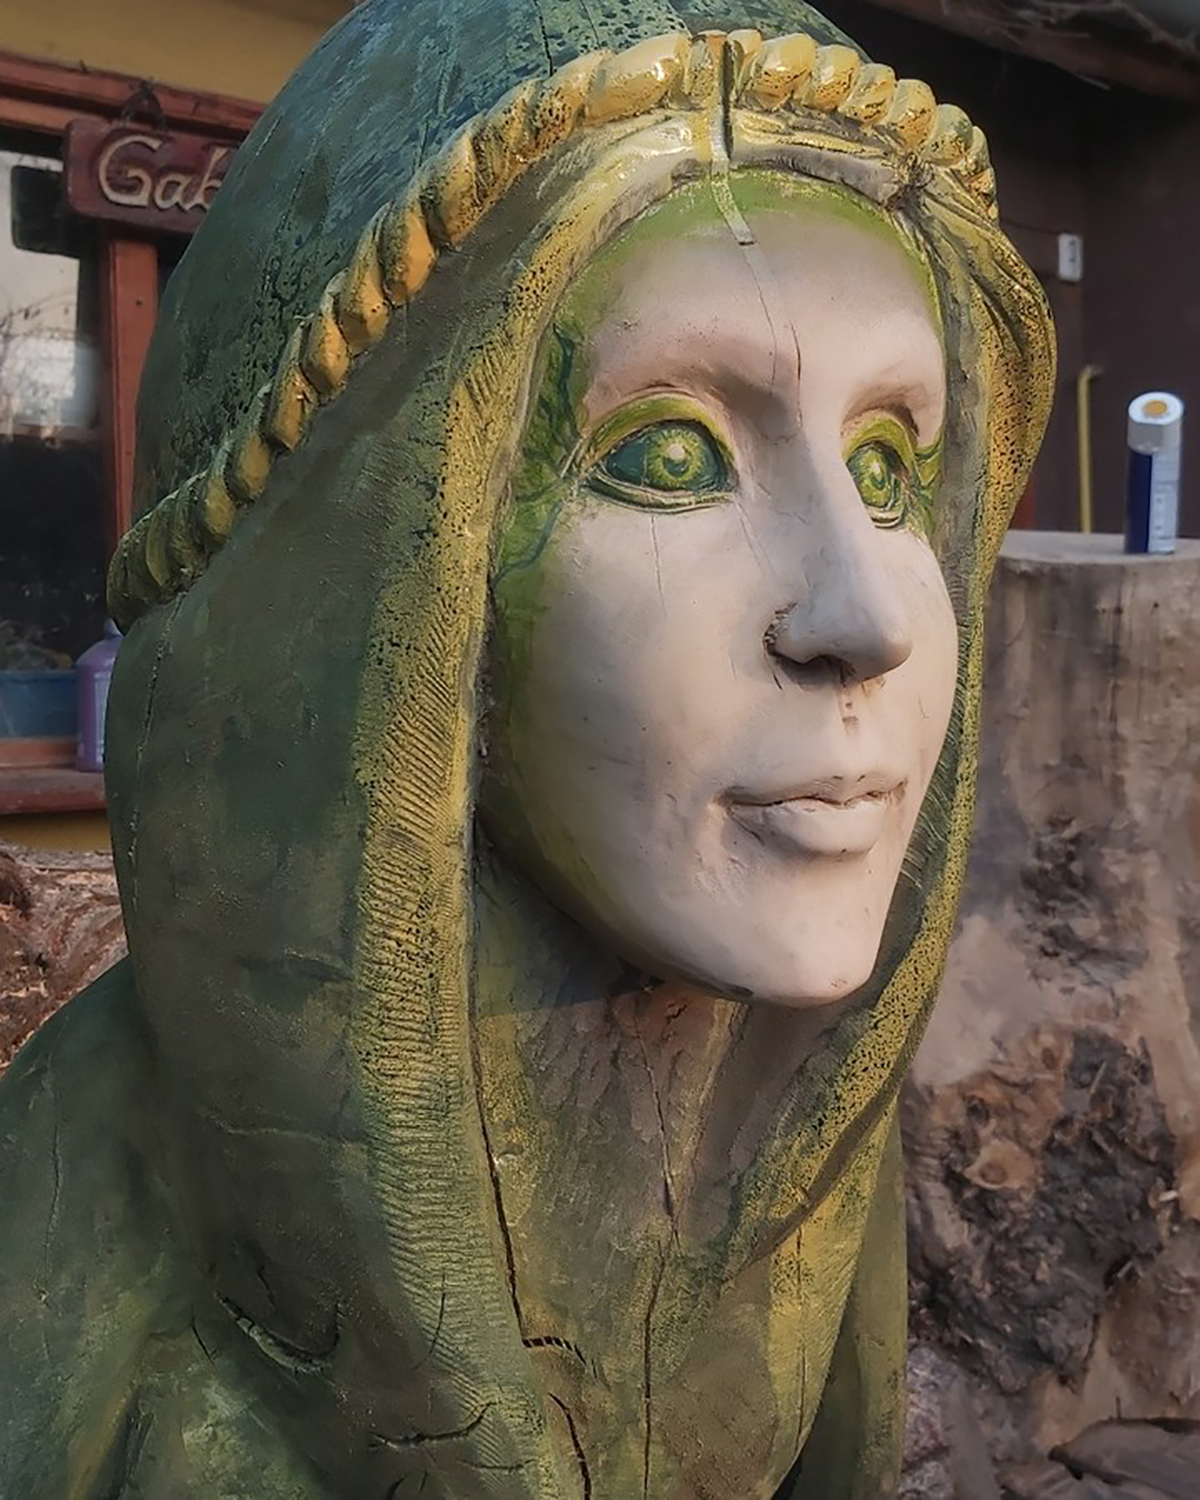 Les incroyables et délicates sculptures à la tronçonneuse de Gabi Rizea ! (vidéo sur Bidfoly.com) Par Justine Mellado Sculptures-tronconneuses-gabi-rizea-26